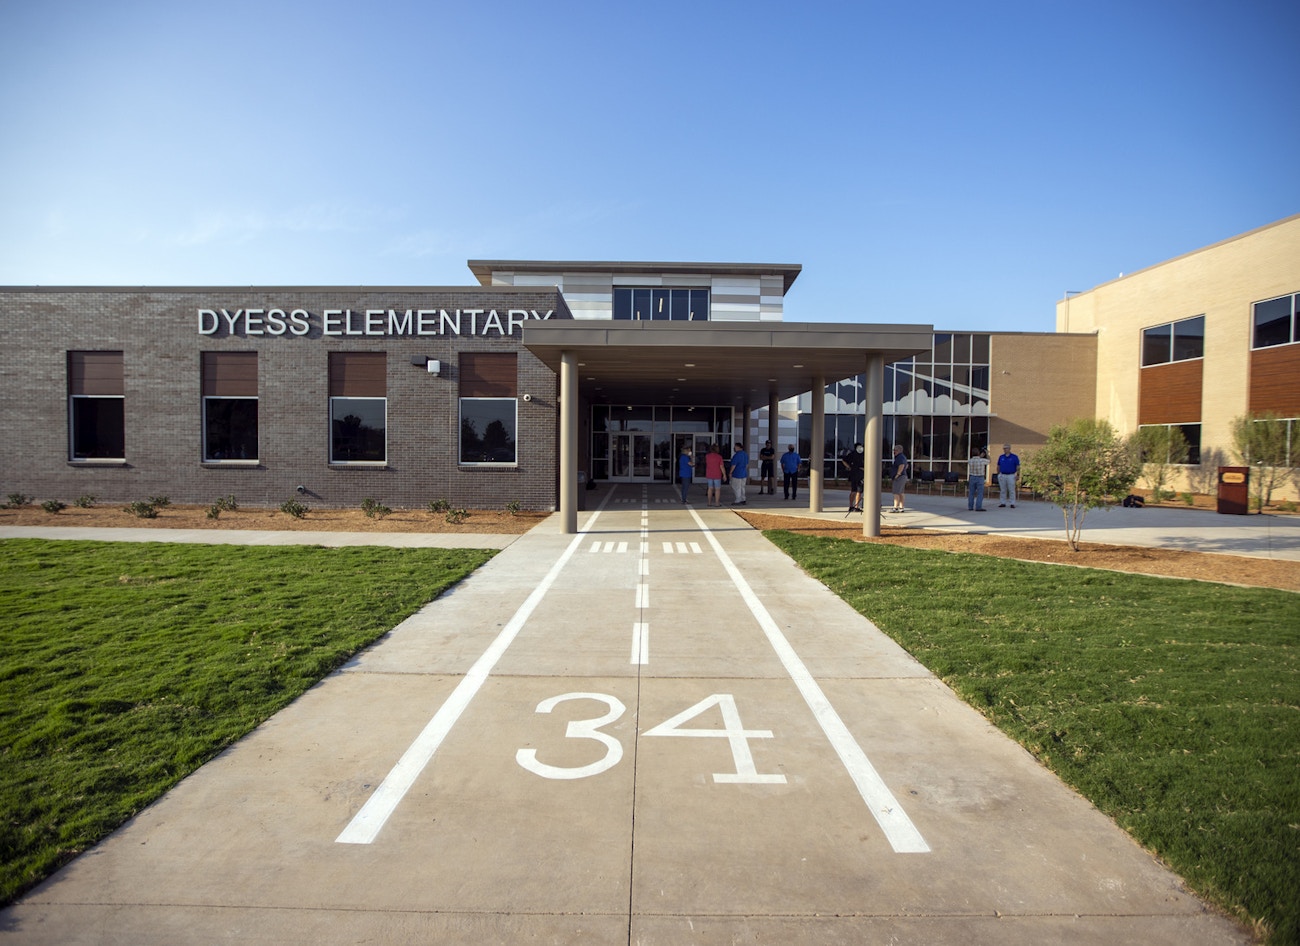                         Dyess Elementary School
                    